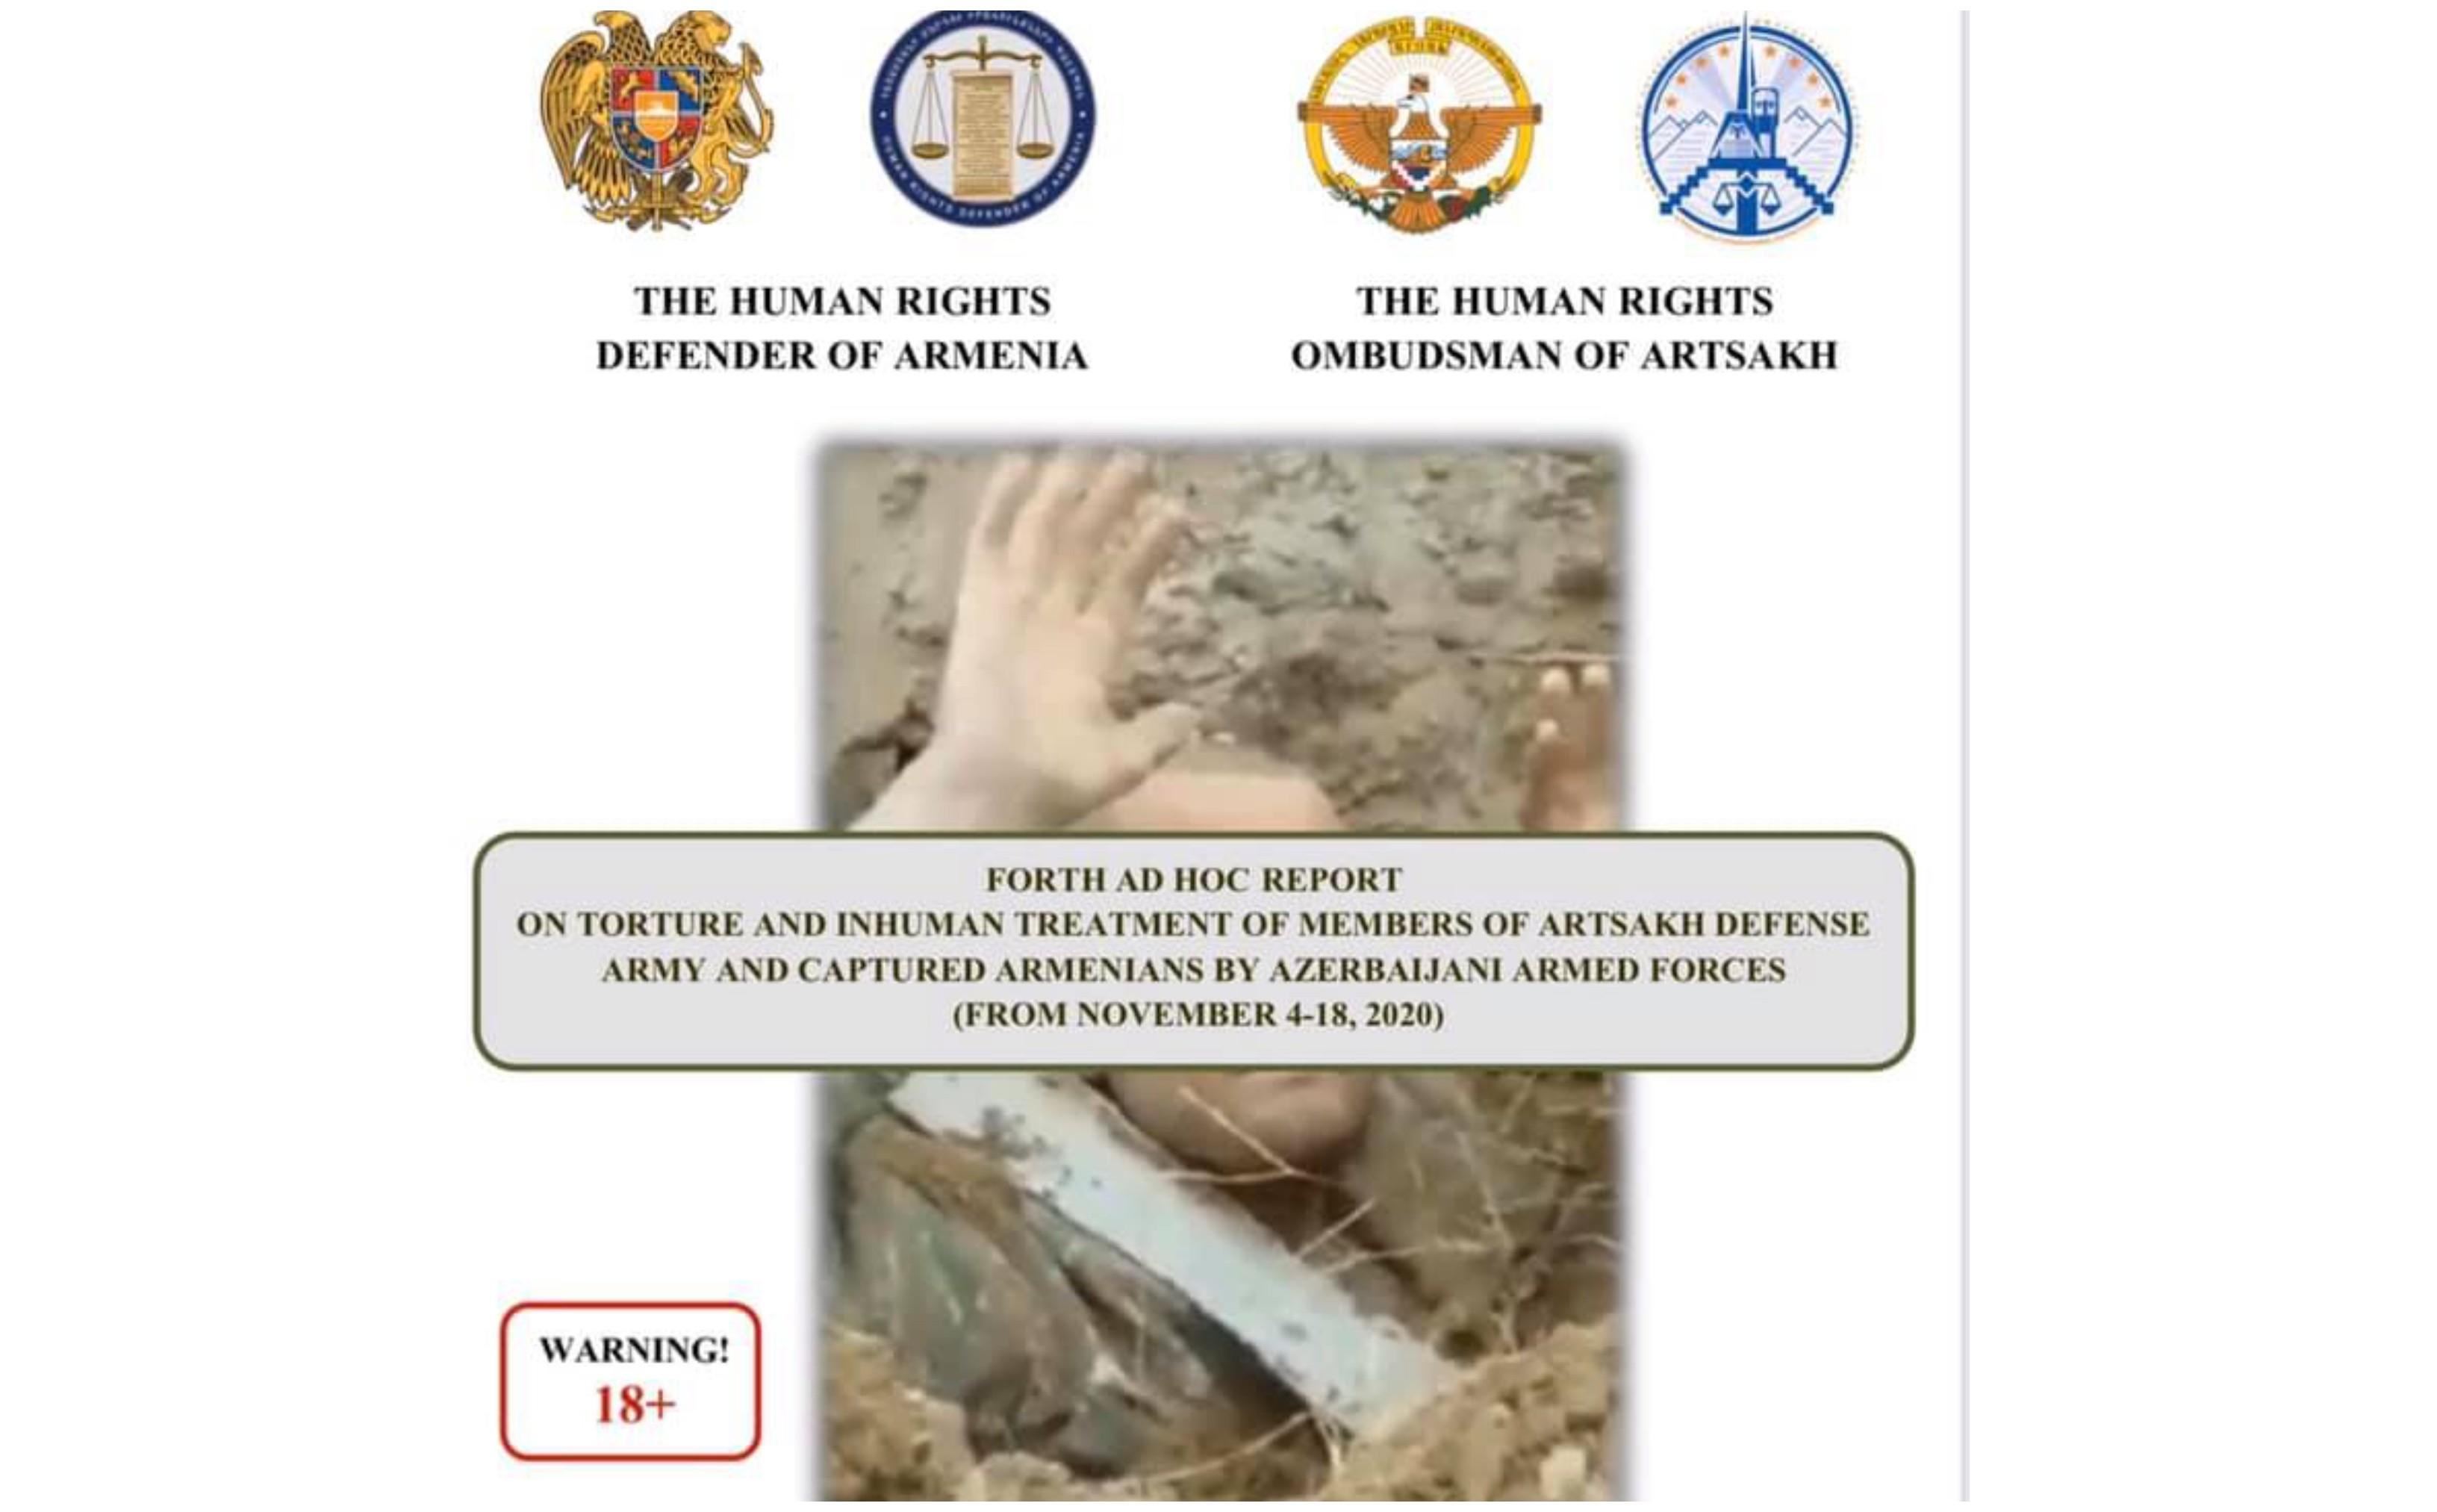 Защитники прав человека представили уже 4-й доклад о зверствах ВС Азербайджана